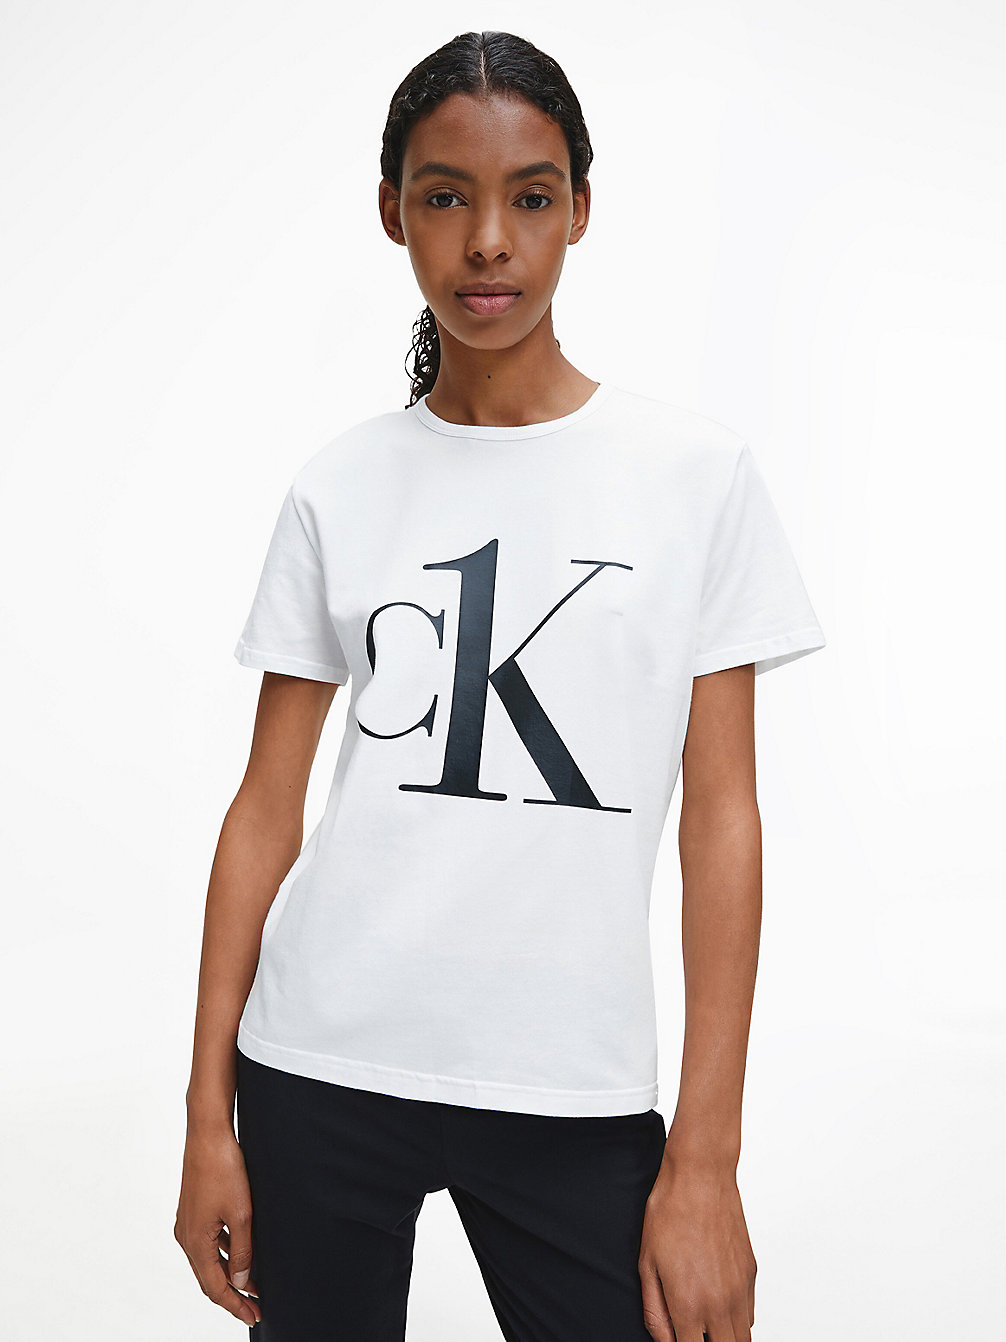 WHITE_BLACK LOGO Pyjama Top - CK One undefined women Calvin Klein